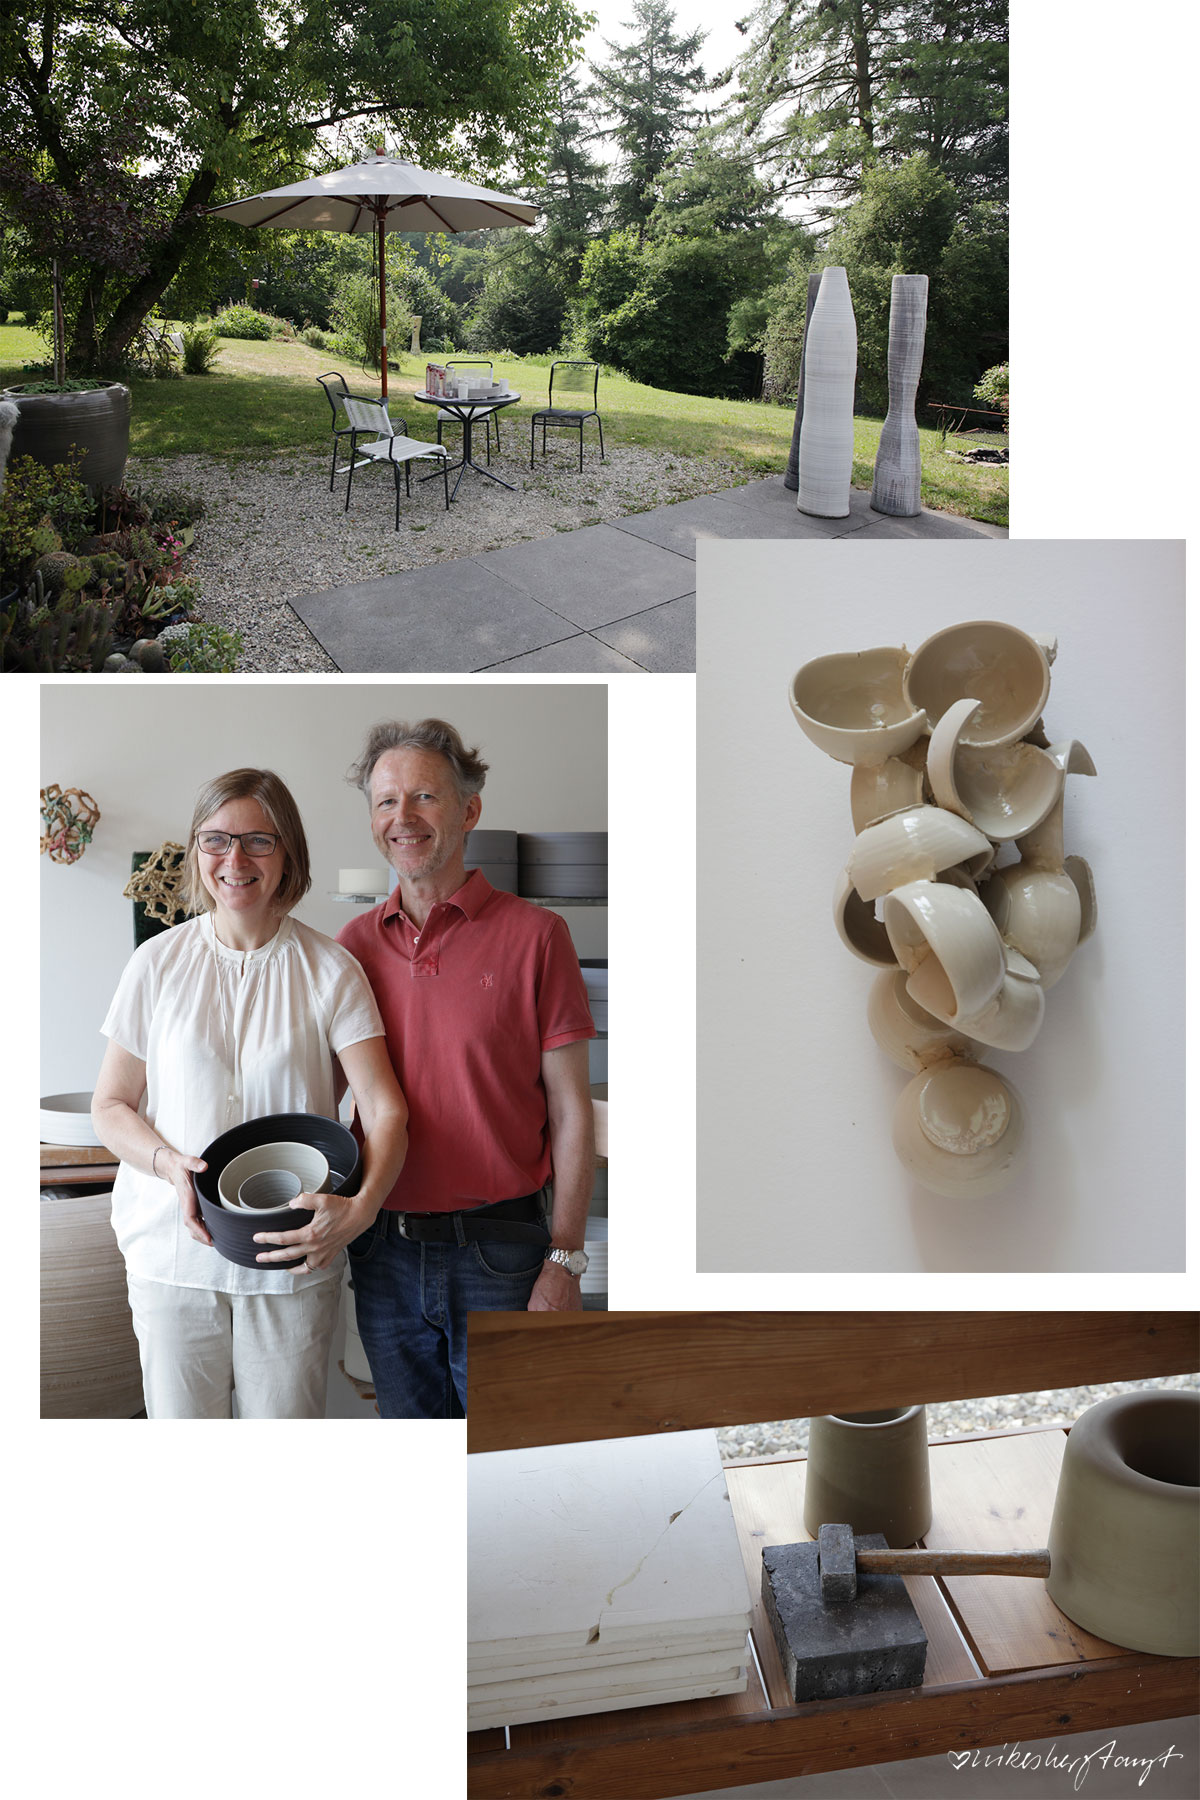 #visitkeramik - keramik im kannenbäckerland, kaas + heger, höhr-grenzhausen, westerwald